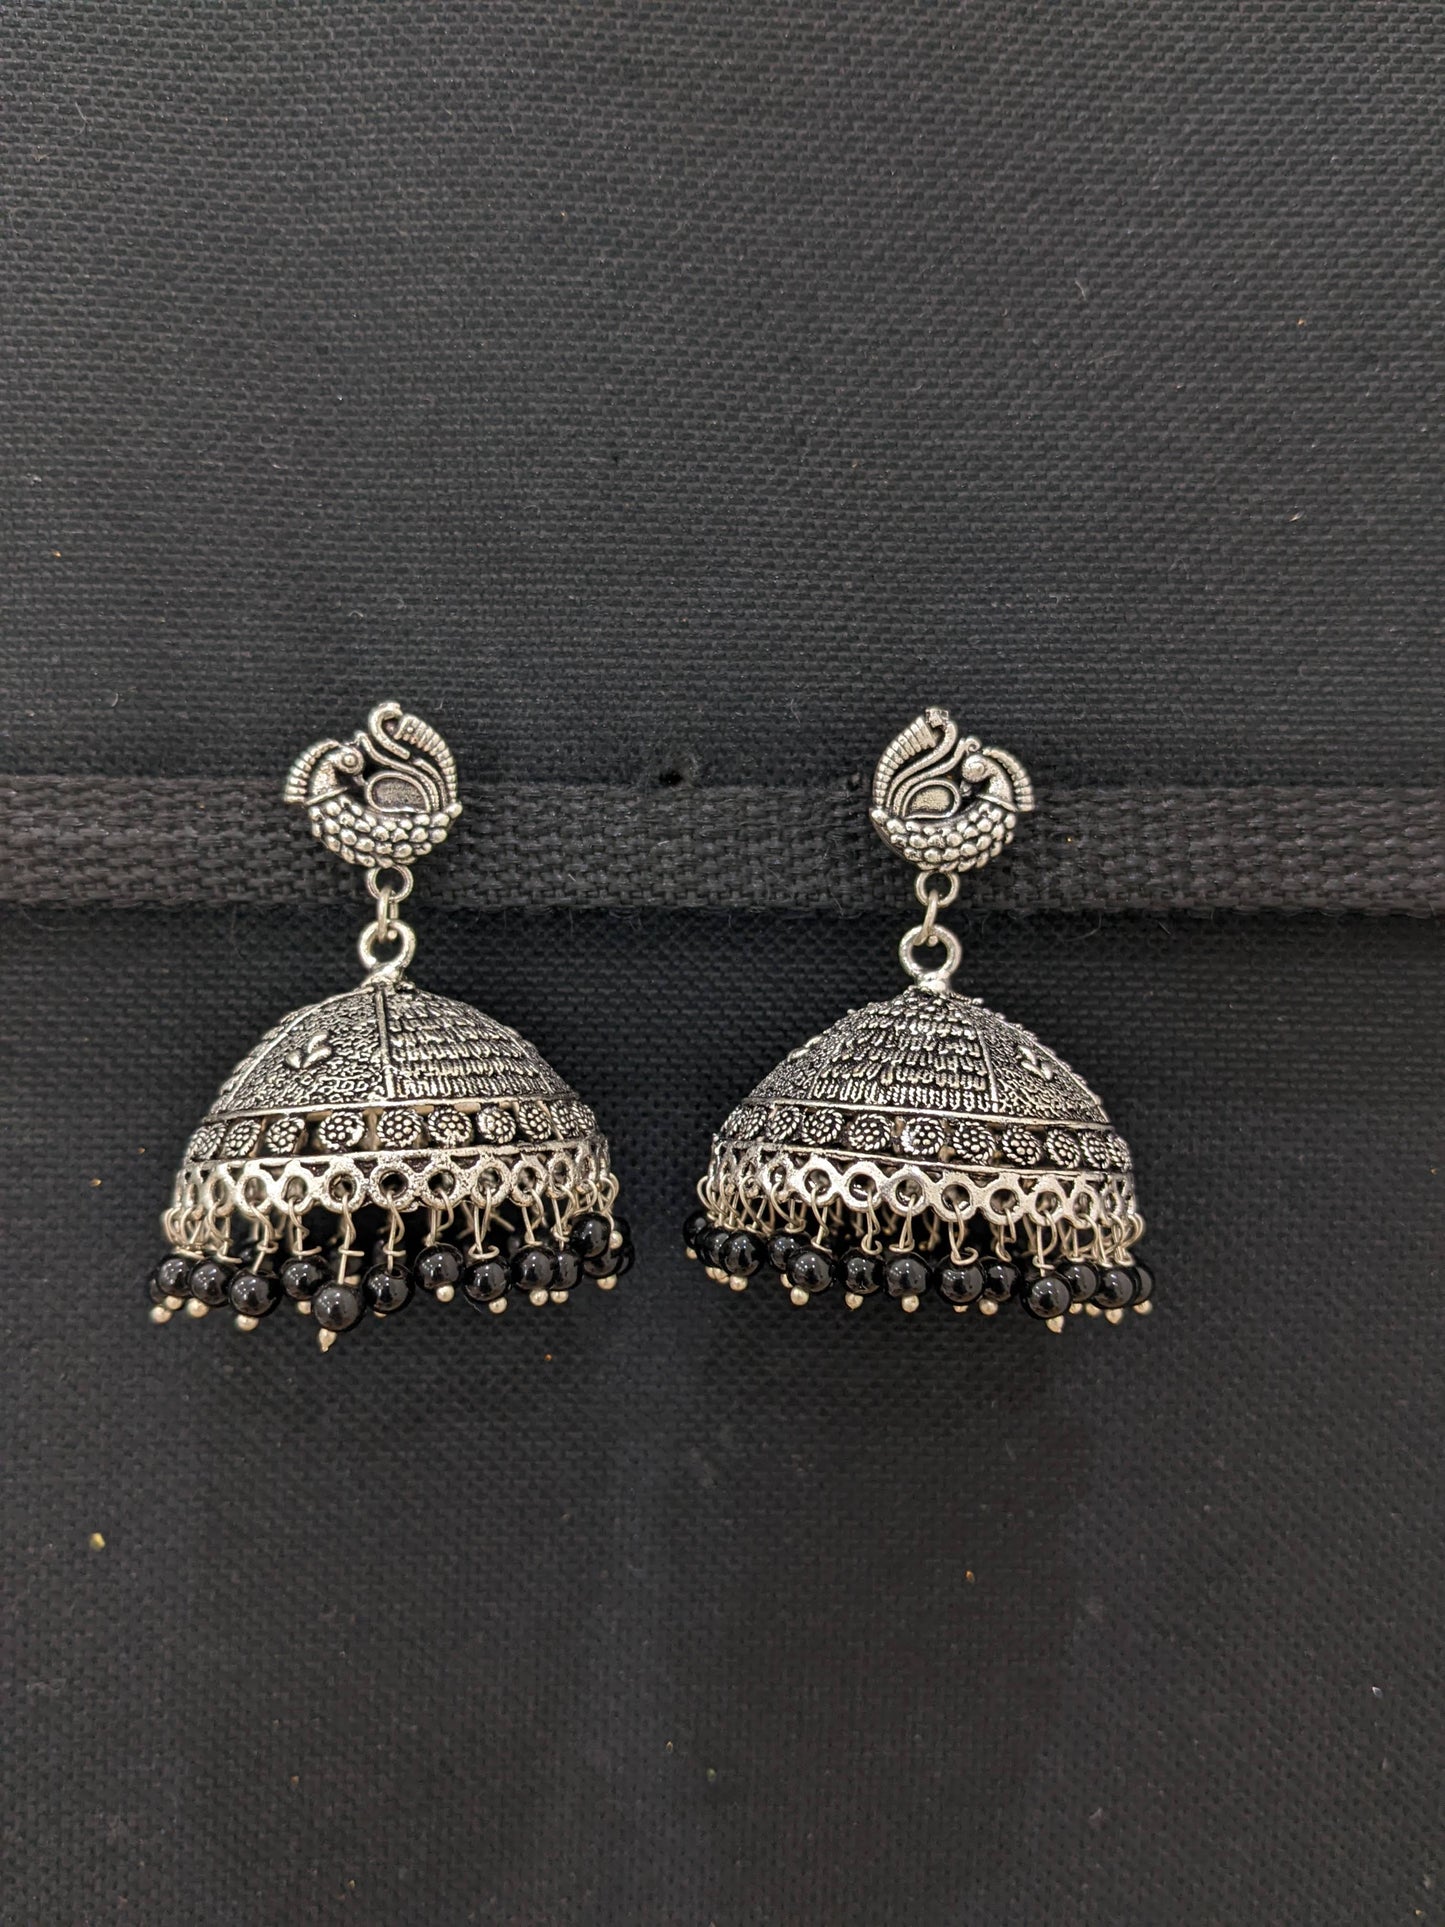 XXL size oxidized silver jhumka earrings